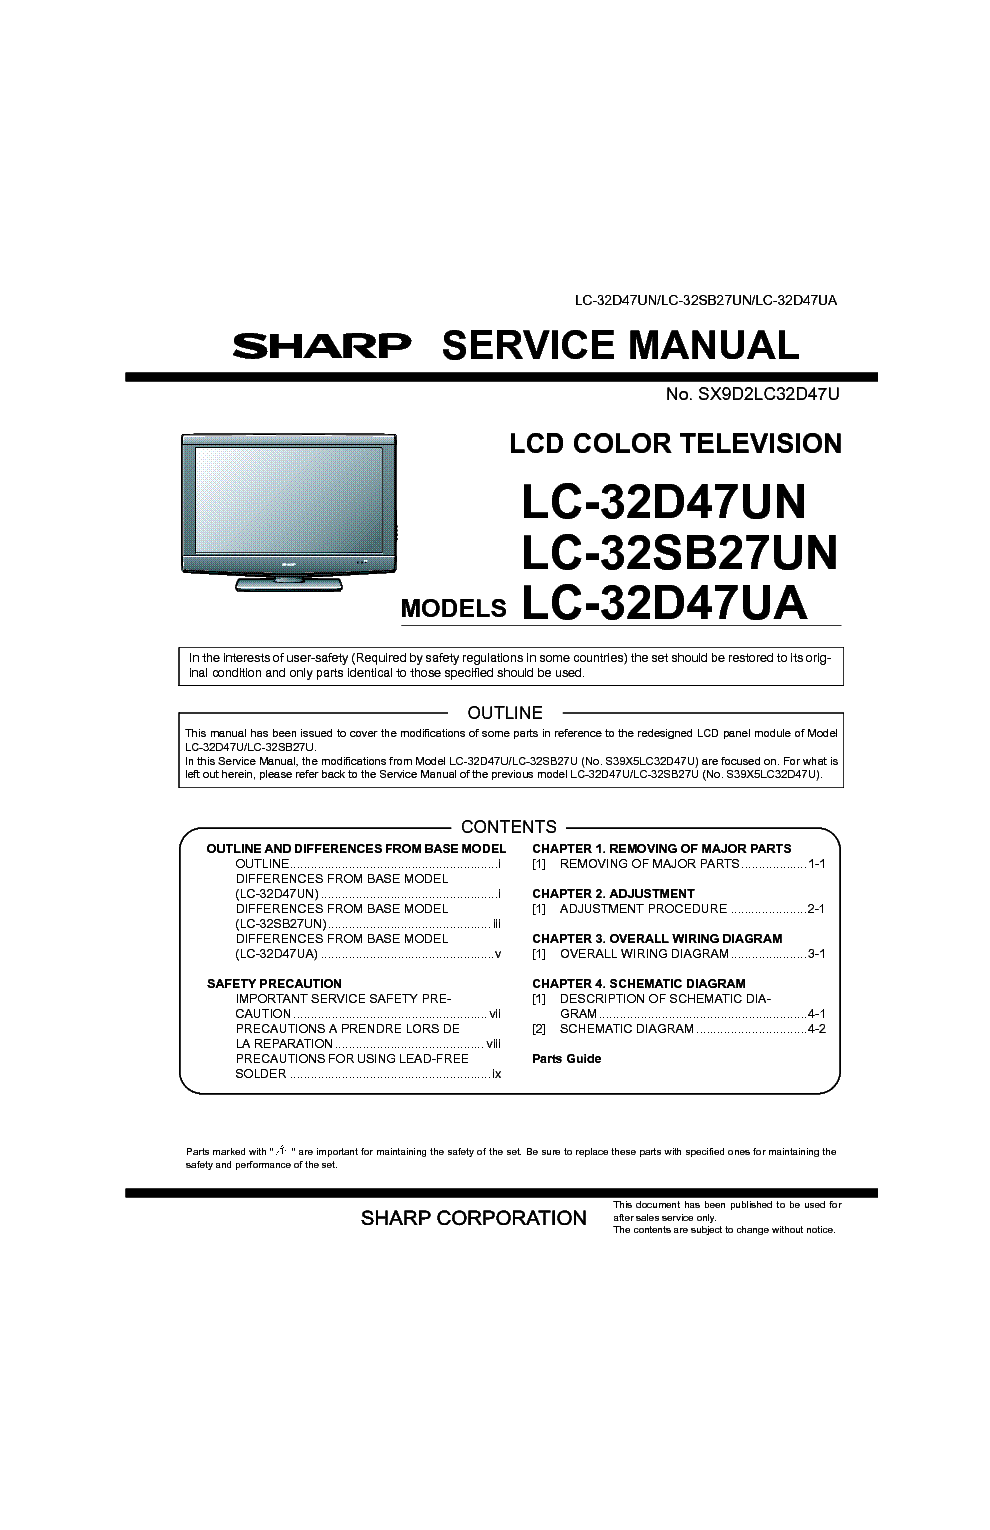 SHARP LC-32D47UN LC-32SB27UN LC-32D47UA service manual (1st page)